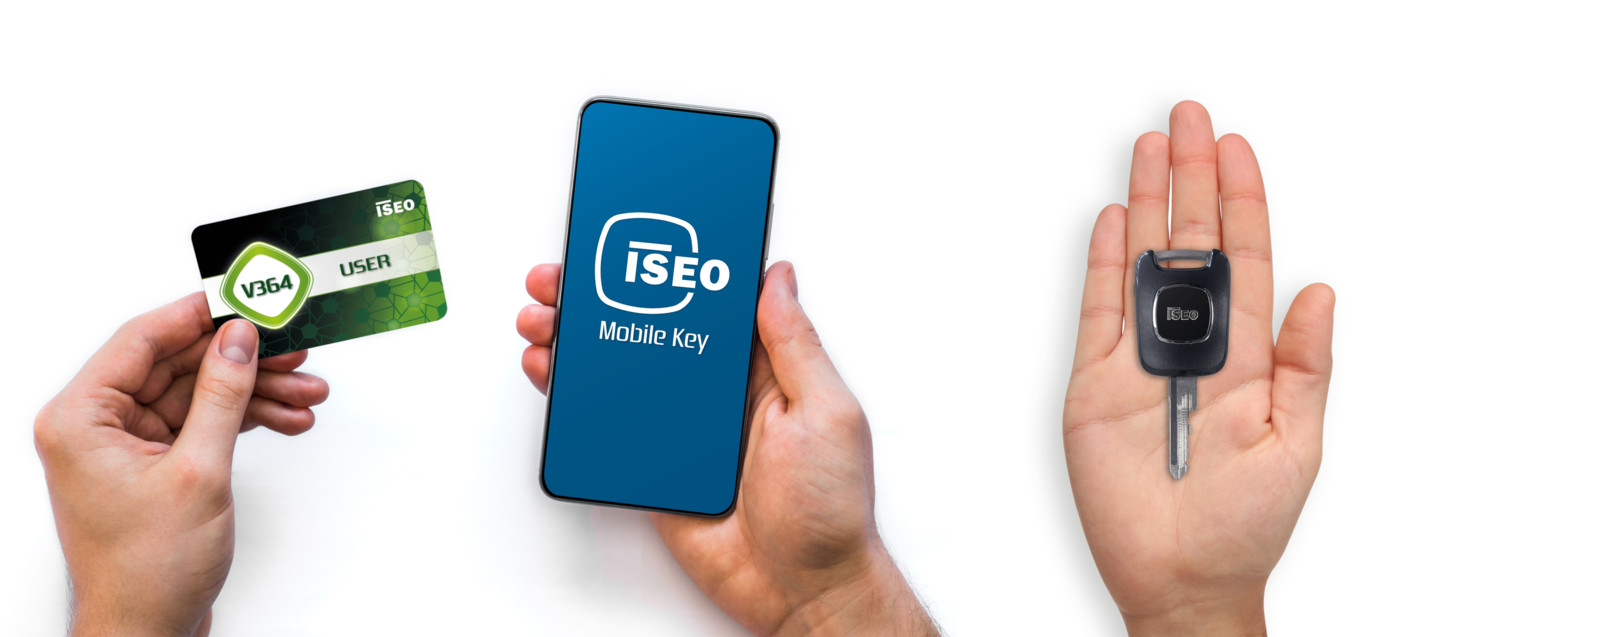 V364 2.0 ist parallel mit RFID-Identmedien sowie mobilen und mechatronischen Schlüsseln nutzbar.